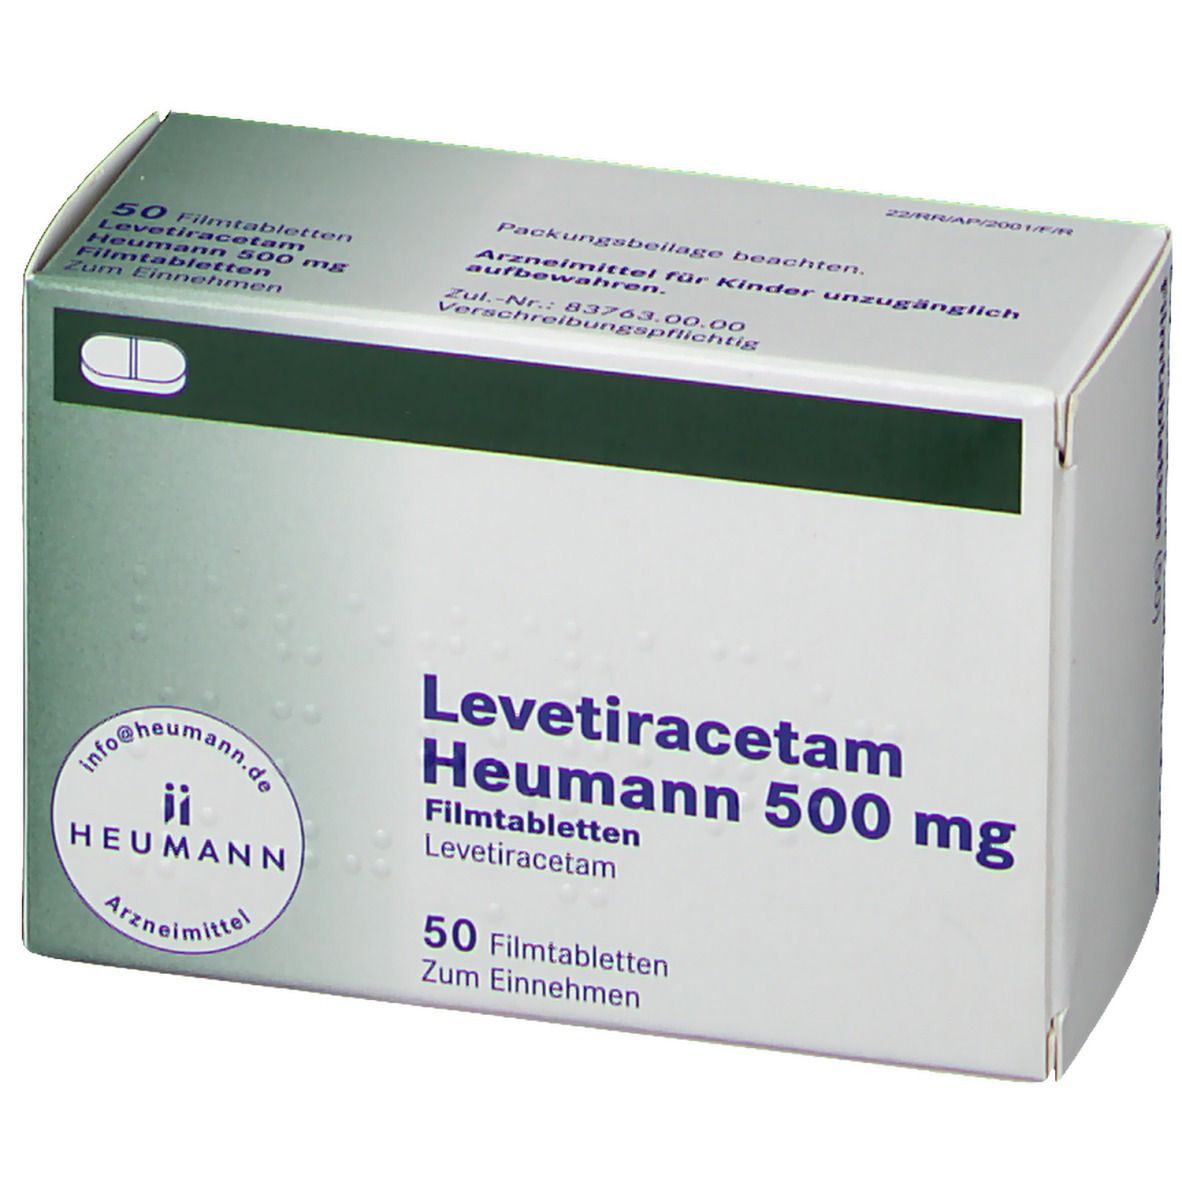 Levetiracetam Heumann 500 mg